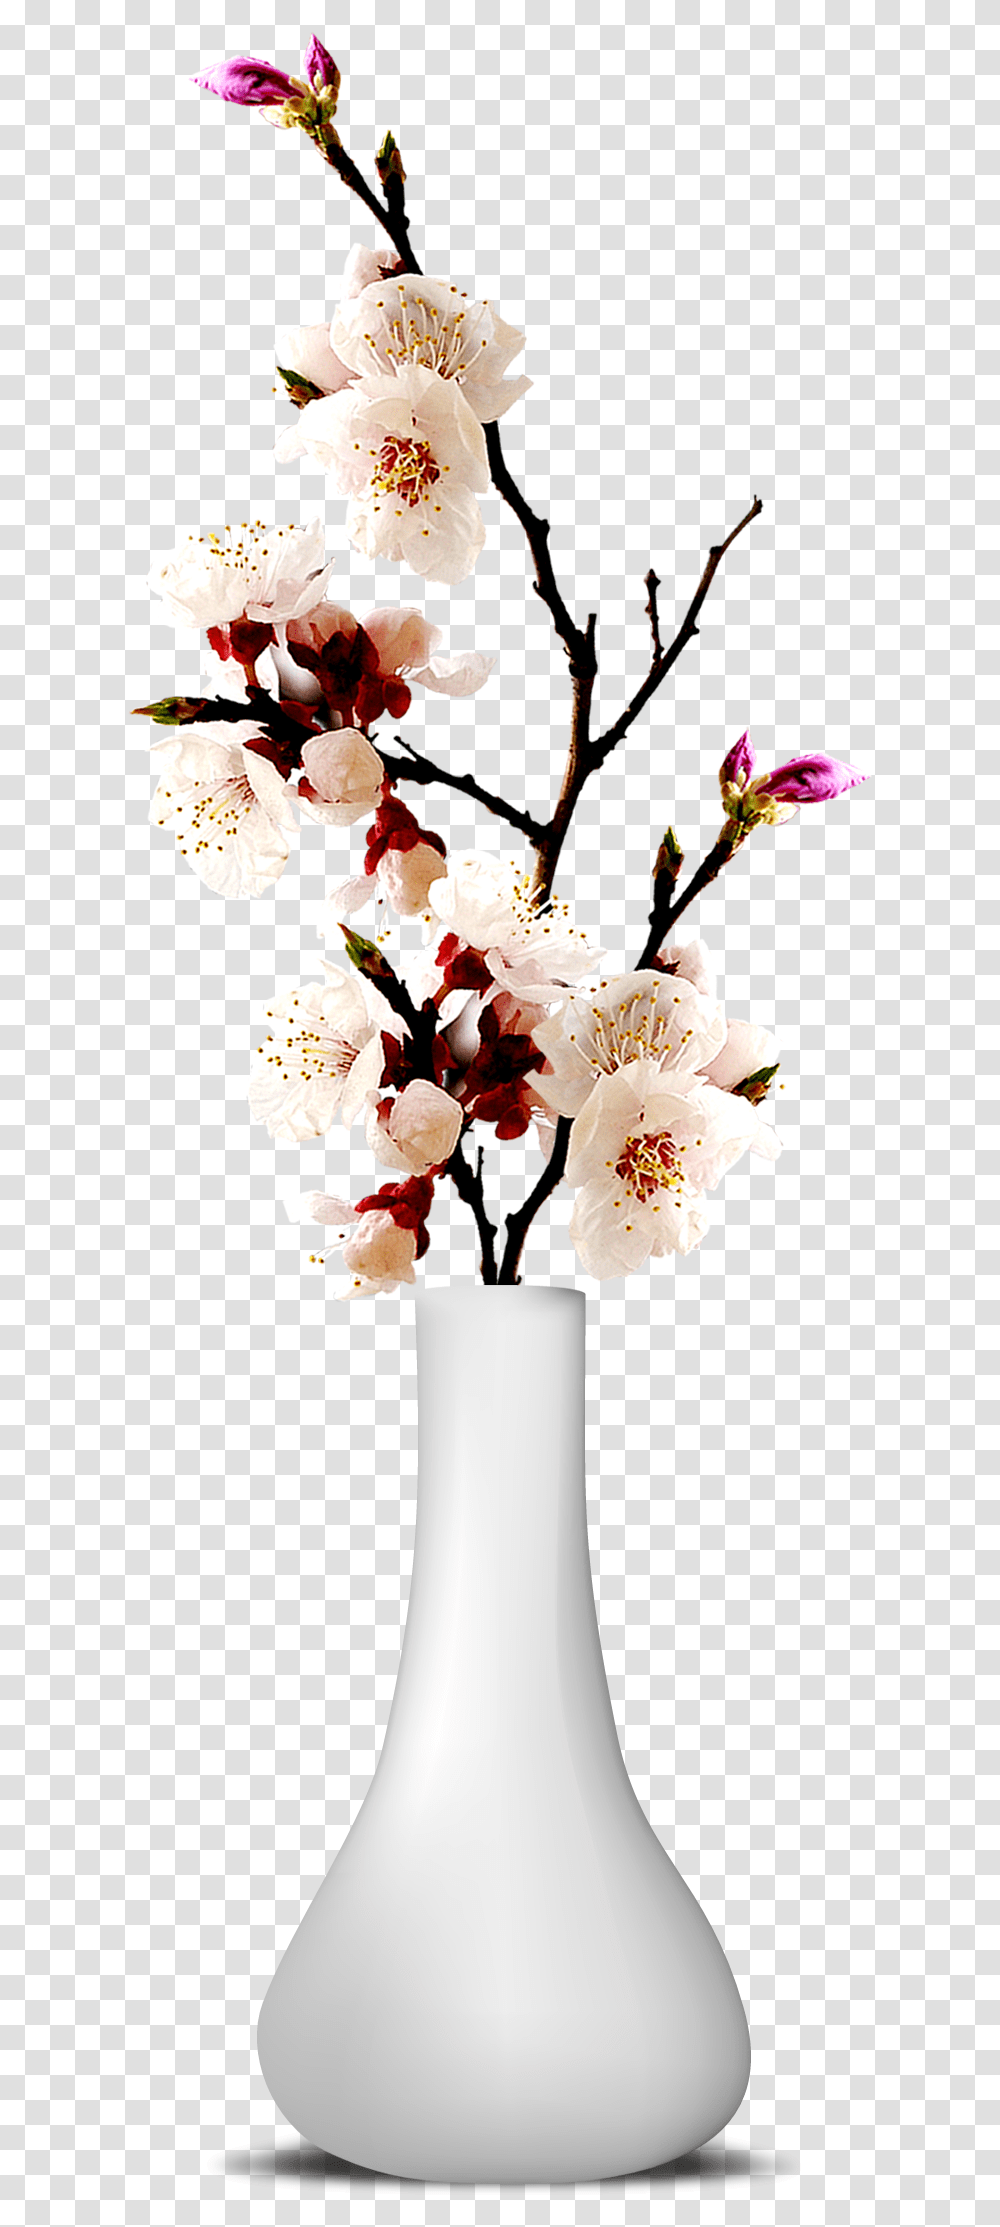 Flower Vase Image Flower Vase, Plant, Blossom, Flower Arrangement, Lamp Transparent Png